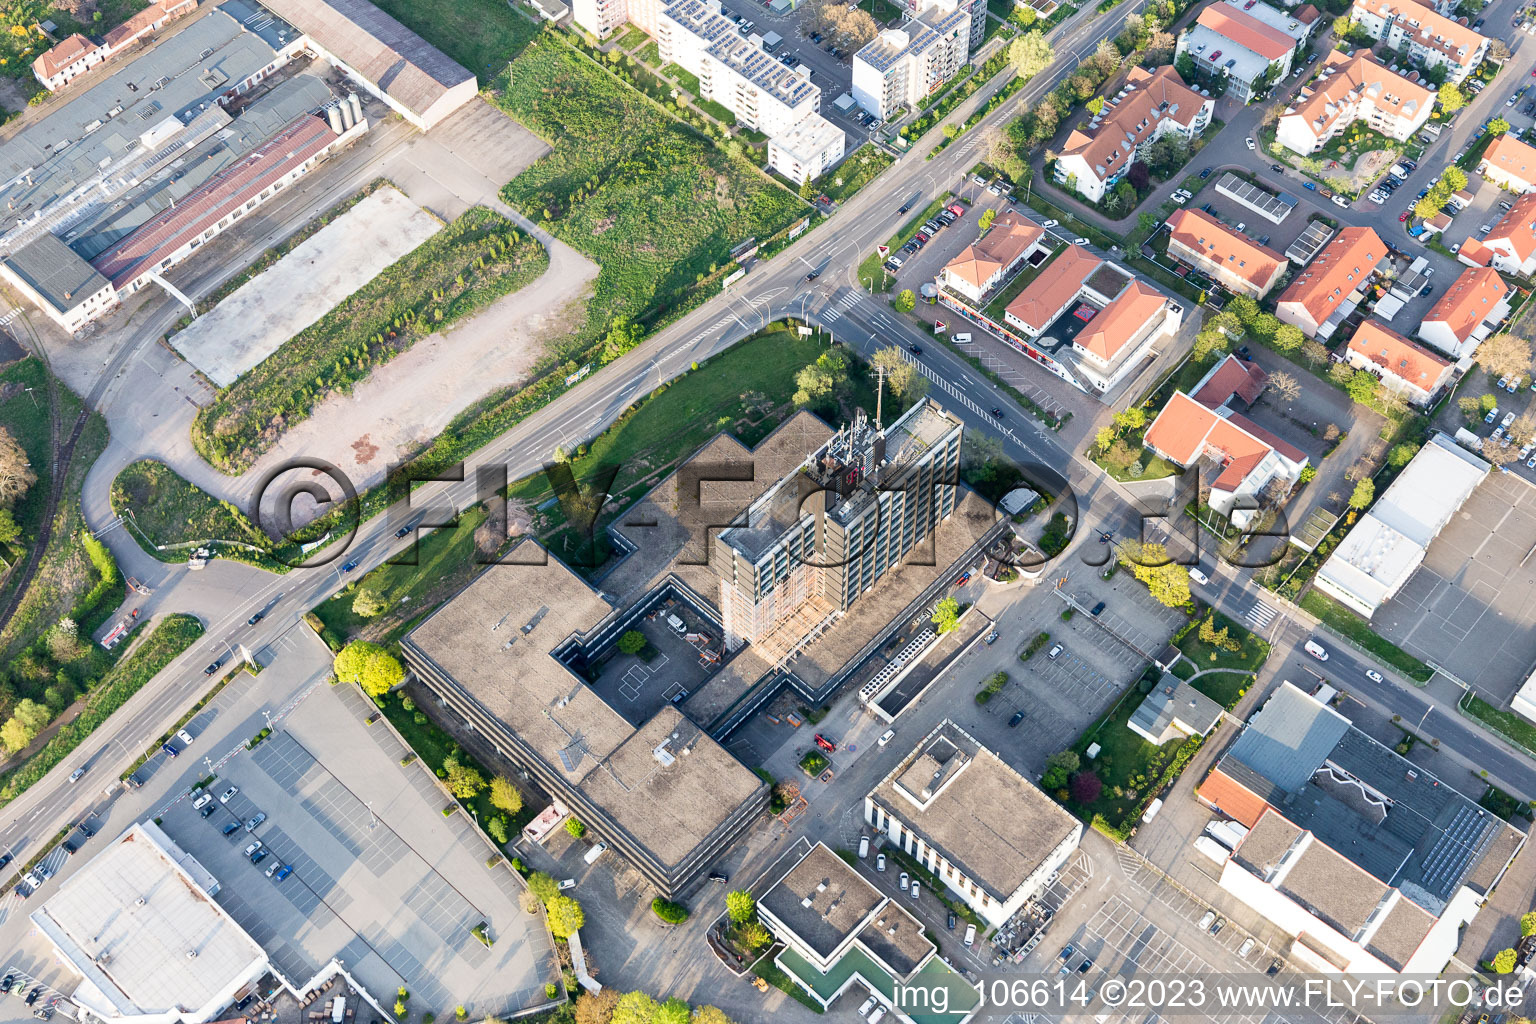 Vue aérienne de Tour de la poste à Neustadt an der Weinstraße dans le département Rhénanie-Palatinat, Allemagne